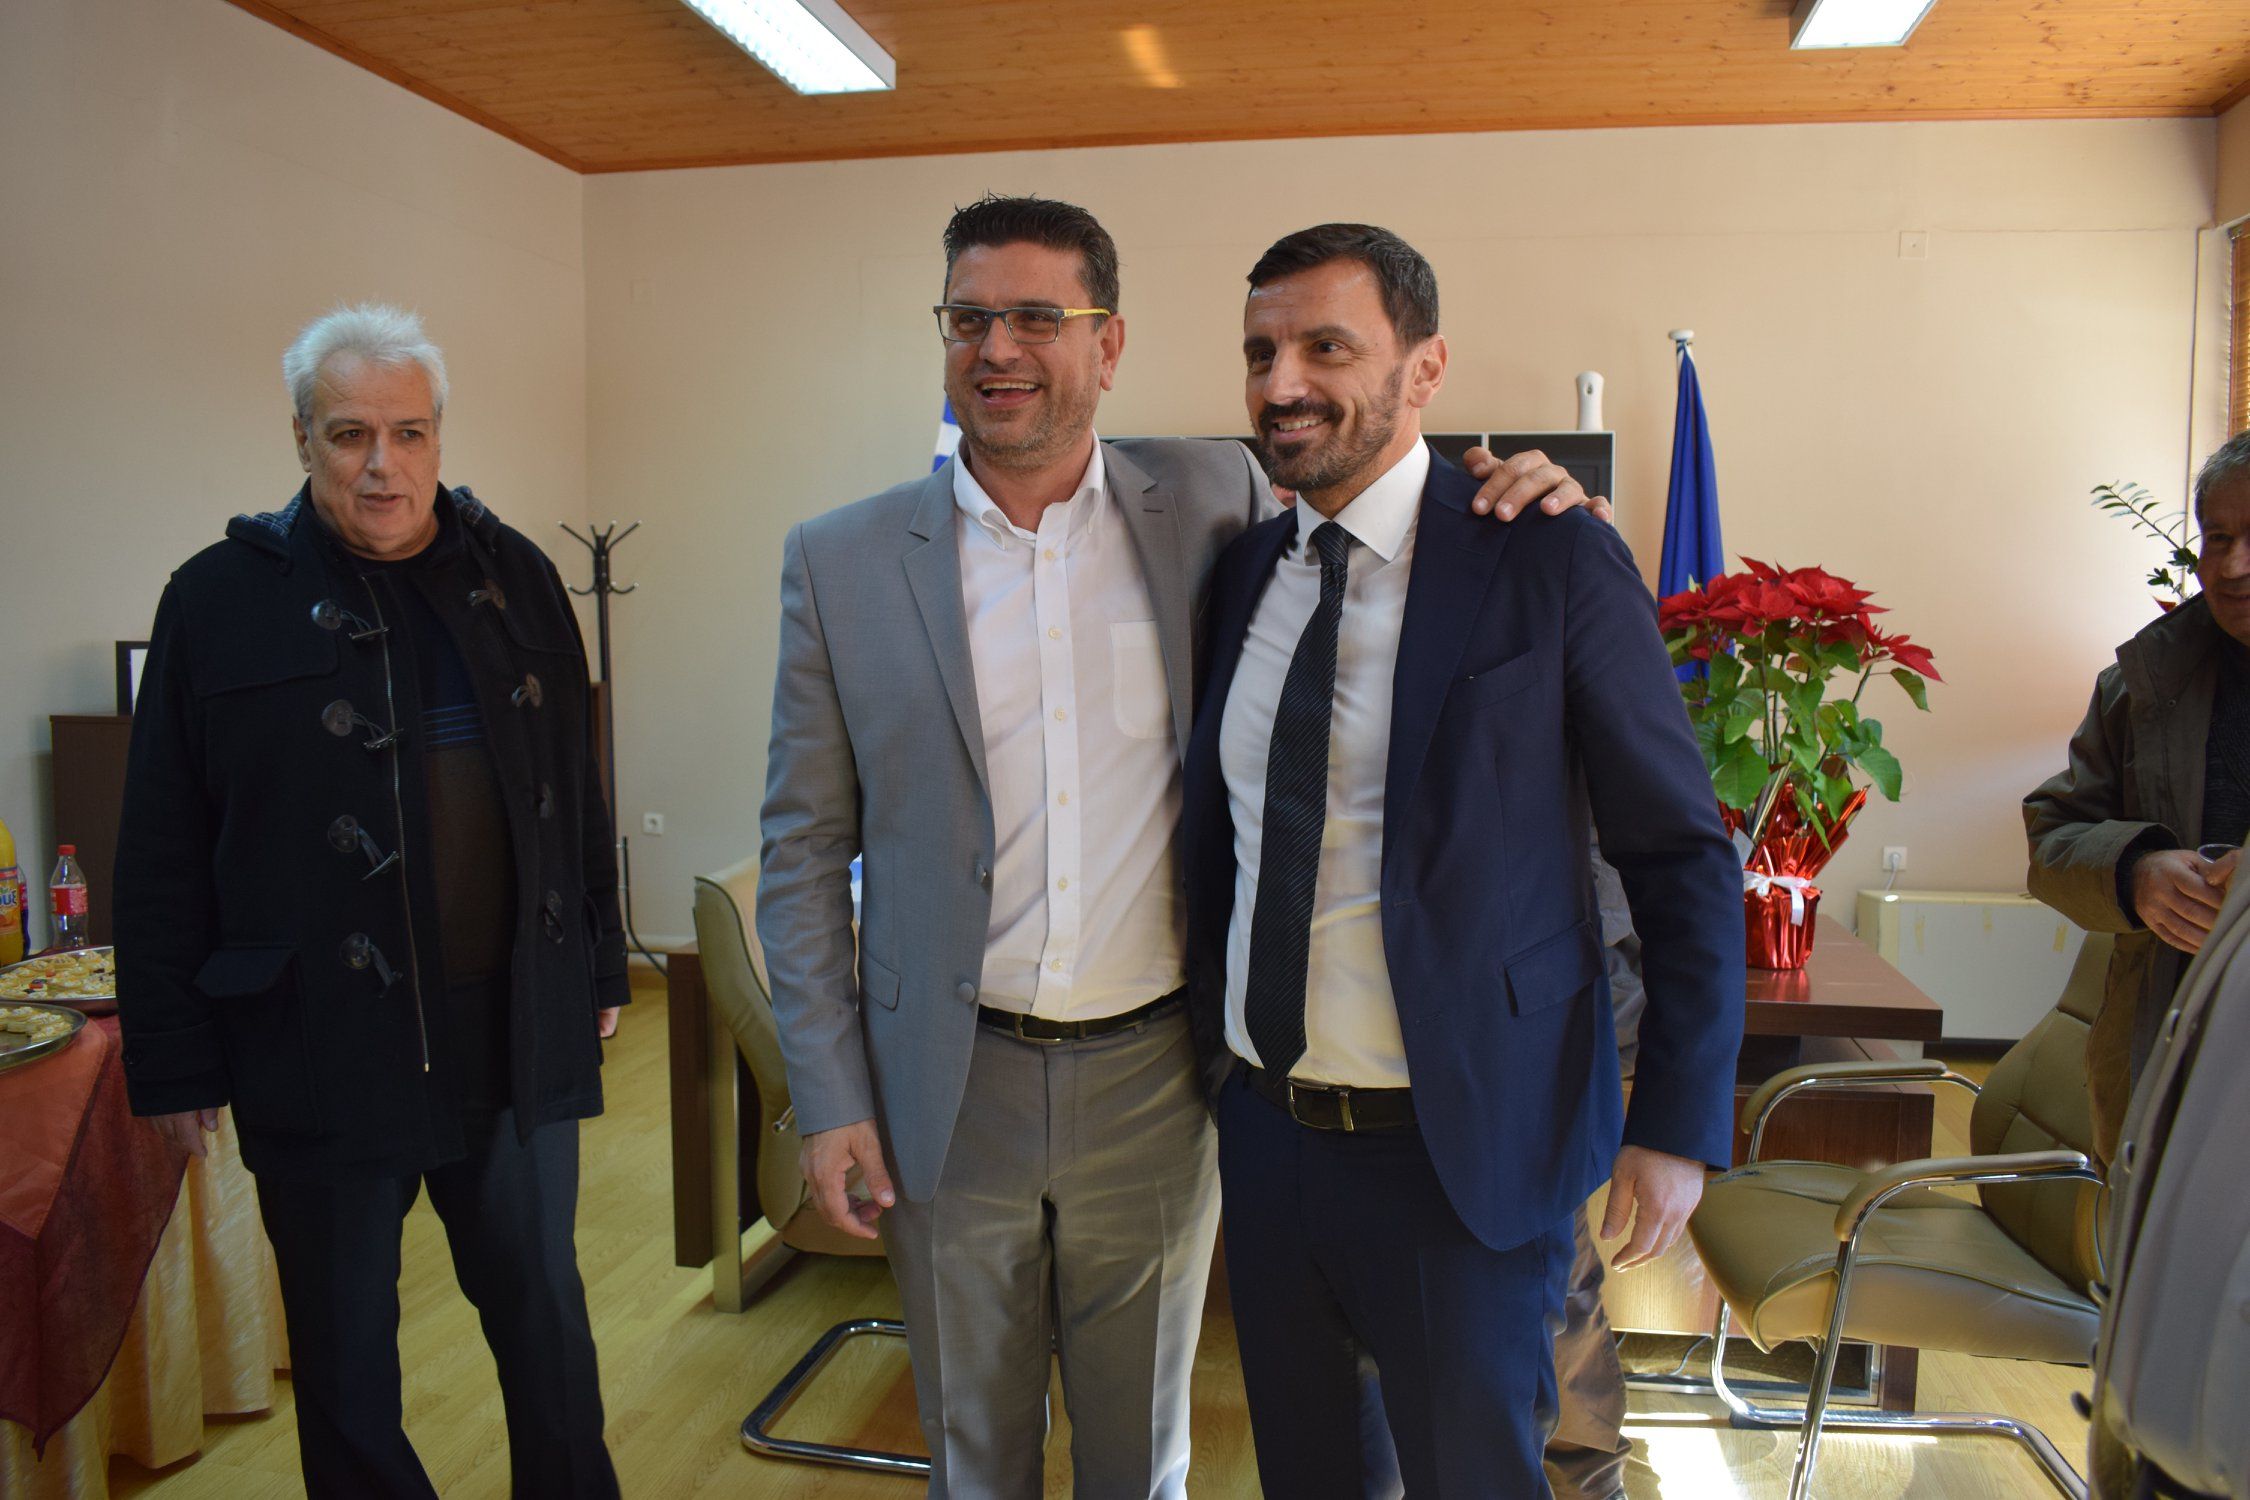 Δήμος Ανδραβίδας-Κυλλήνης: Πολιτικοί και Αυτοδιοικητικοί αλλά και πολίτες ευχήθηκαν στον Δήμαρχο Γιάννη Λέντζα για την ονομαστική του εορτή (photos)